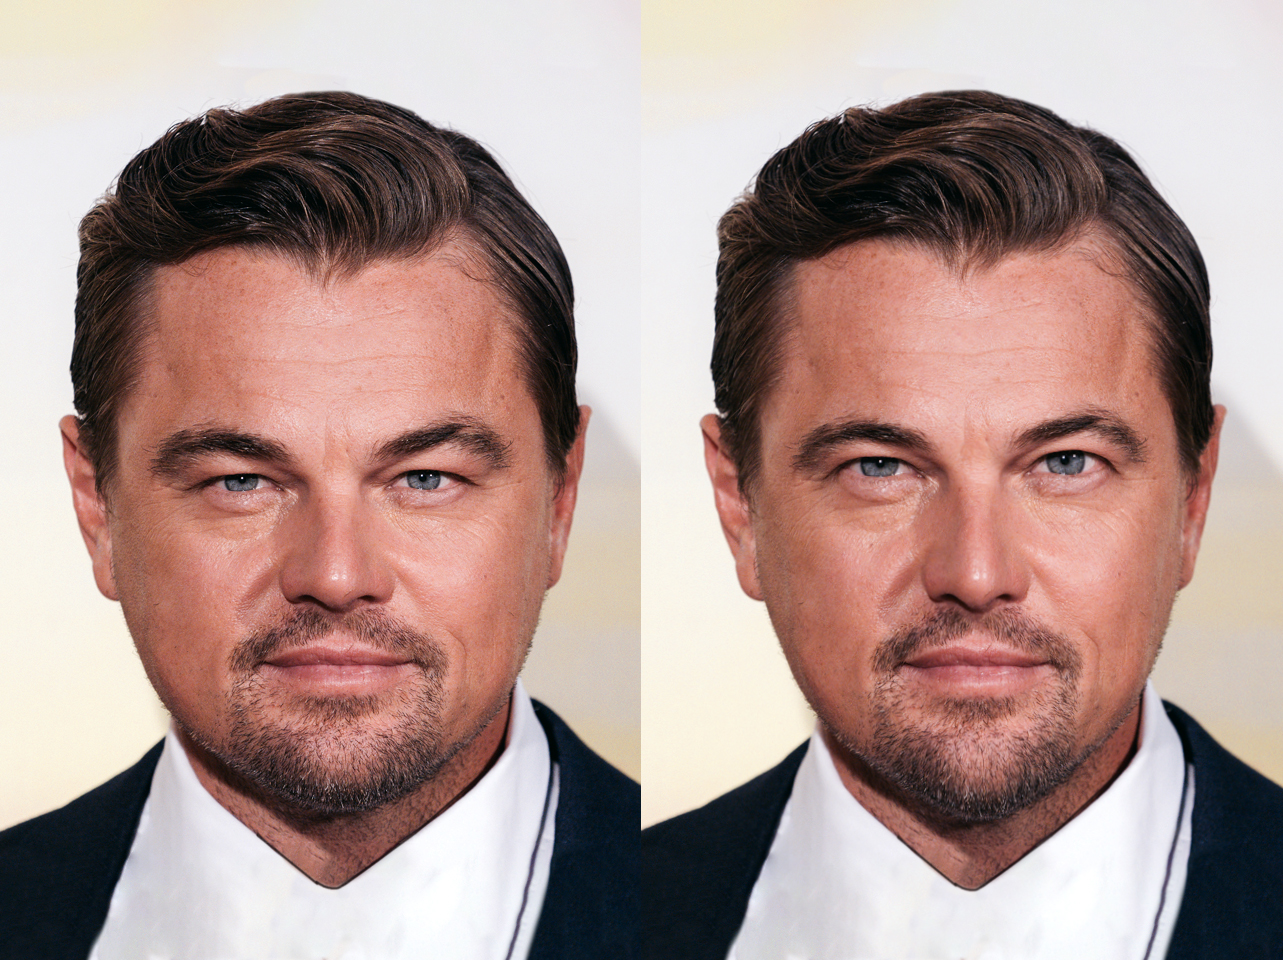 Le vrai Leonardo DiCaprio contre son moi idéal | Source : Getty Images